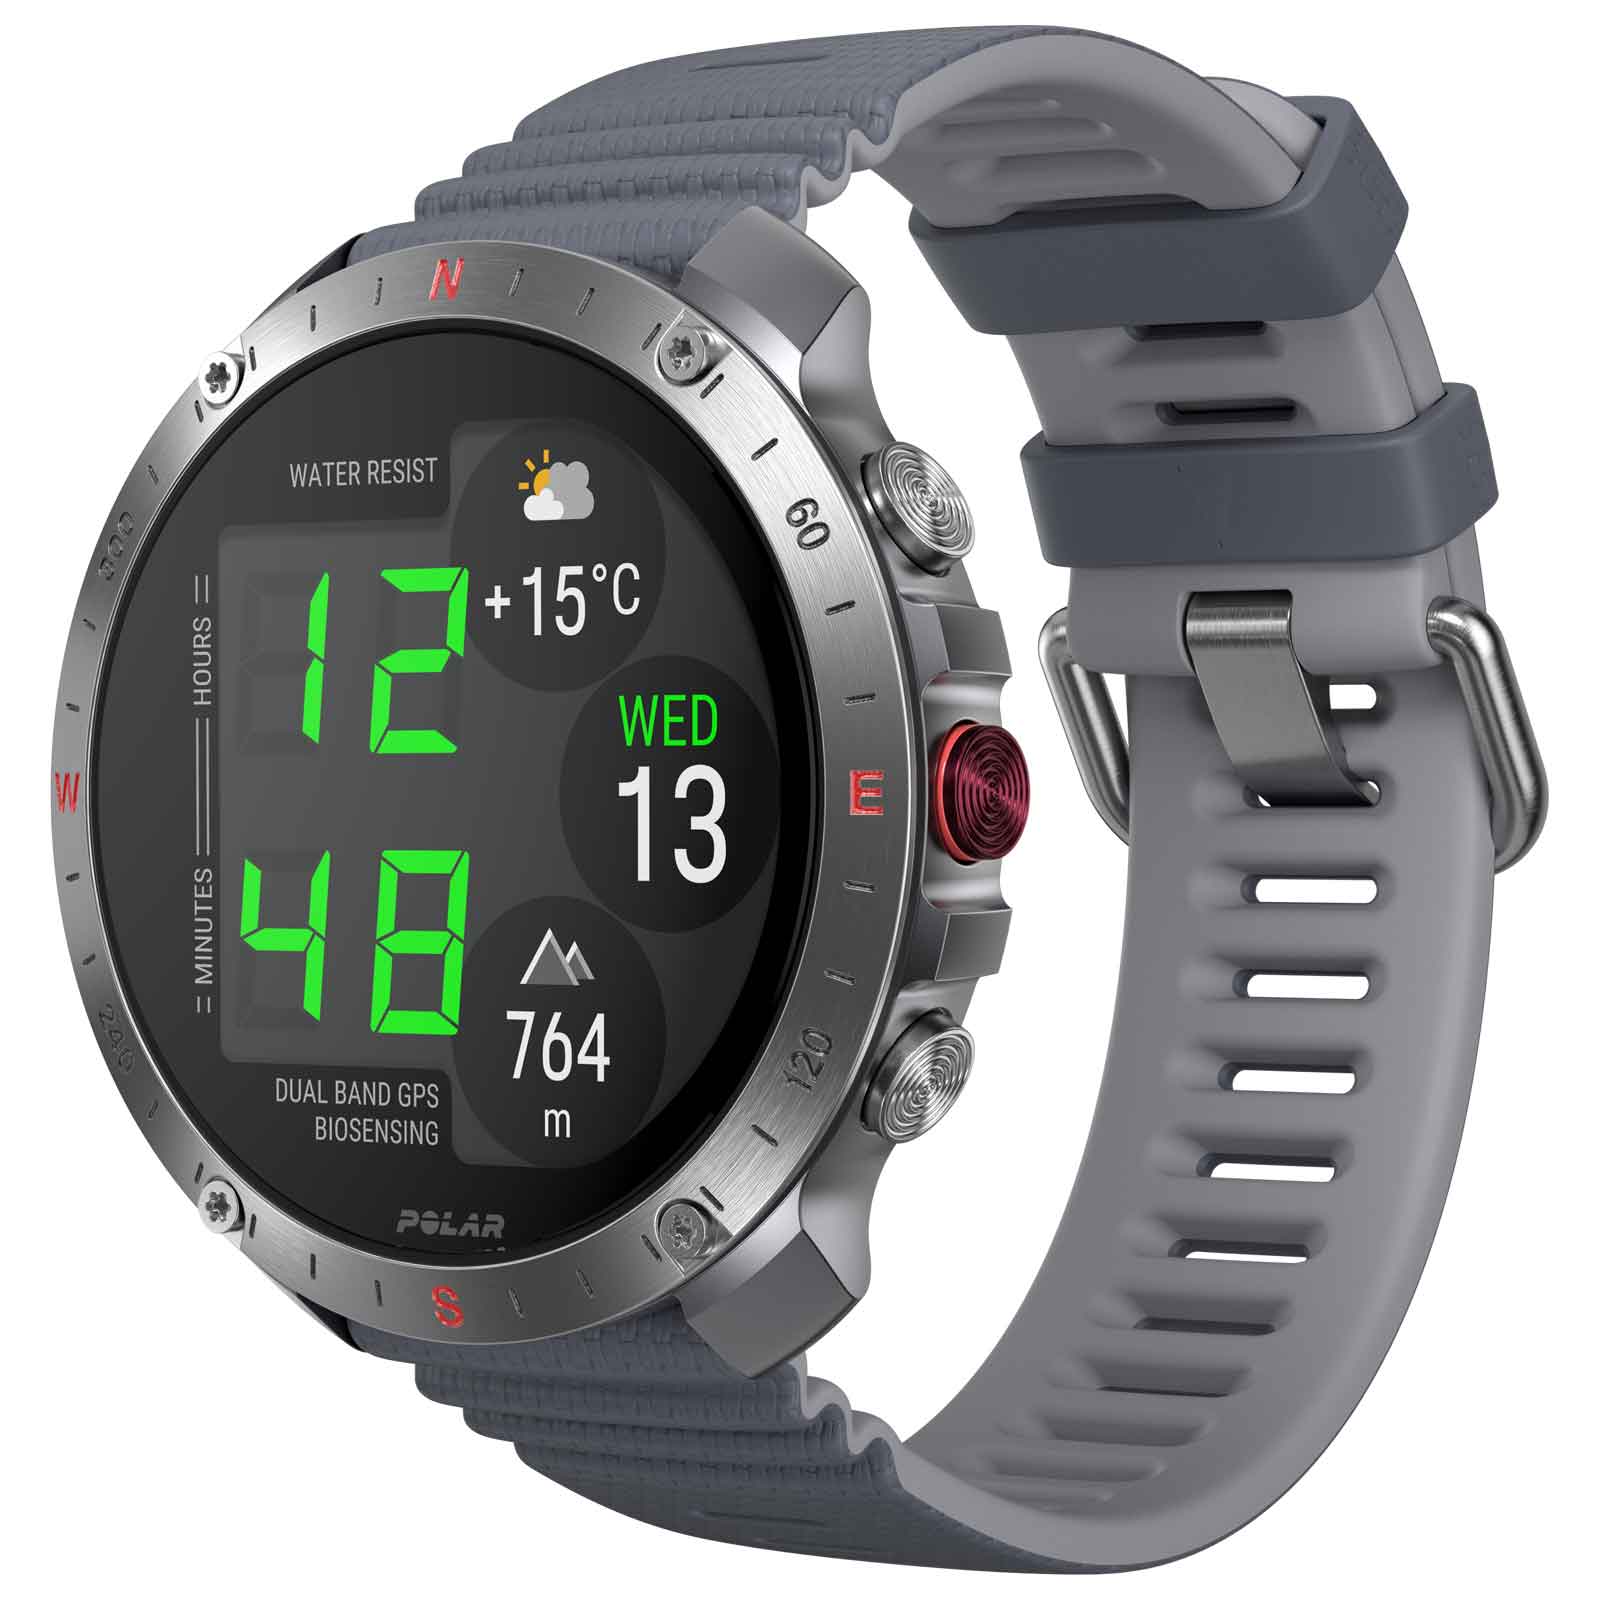 Produktbild von Polar Grit X2 Pro GPS Multisport Uhr - silber/grau